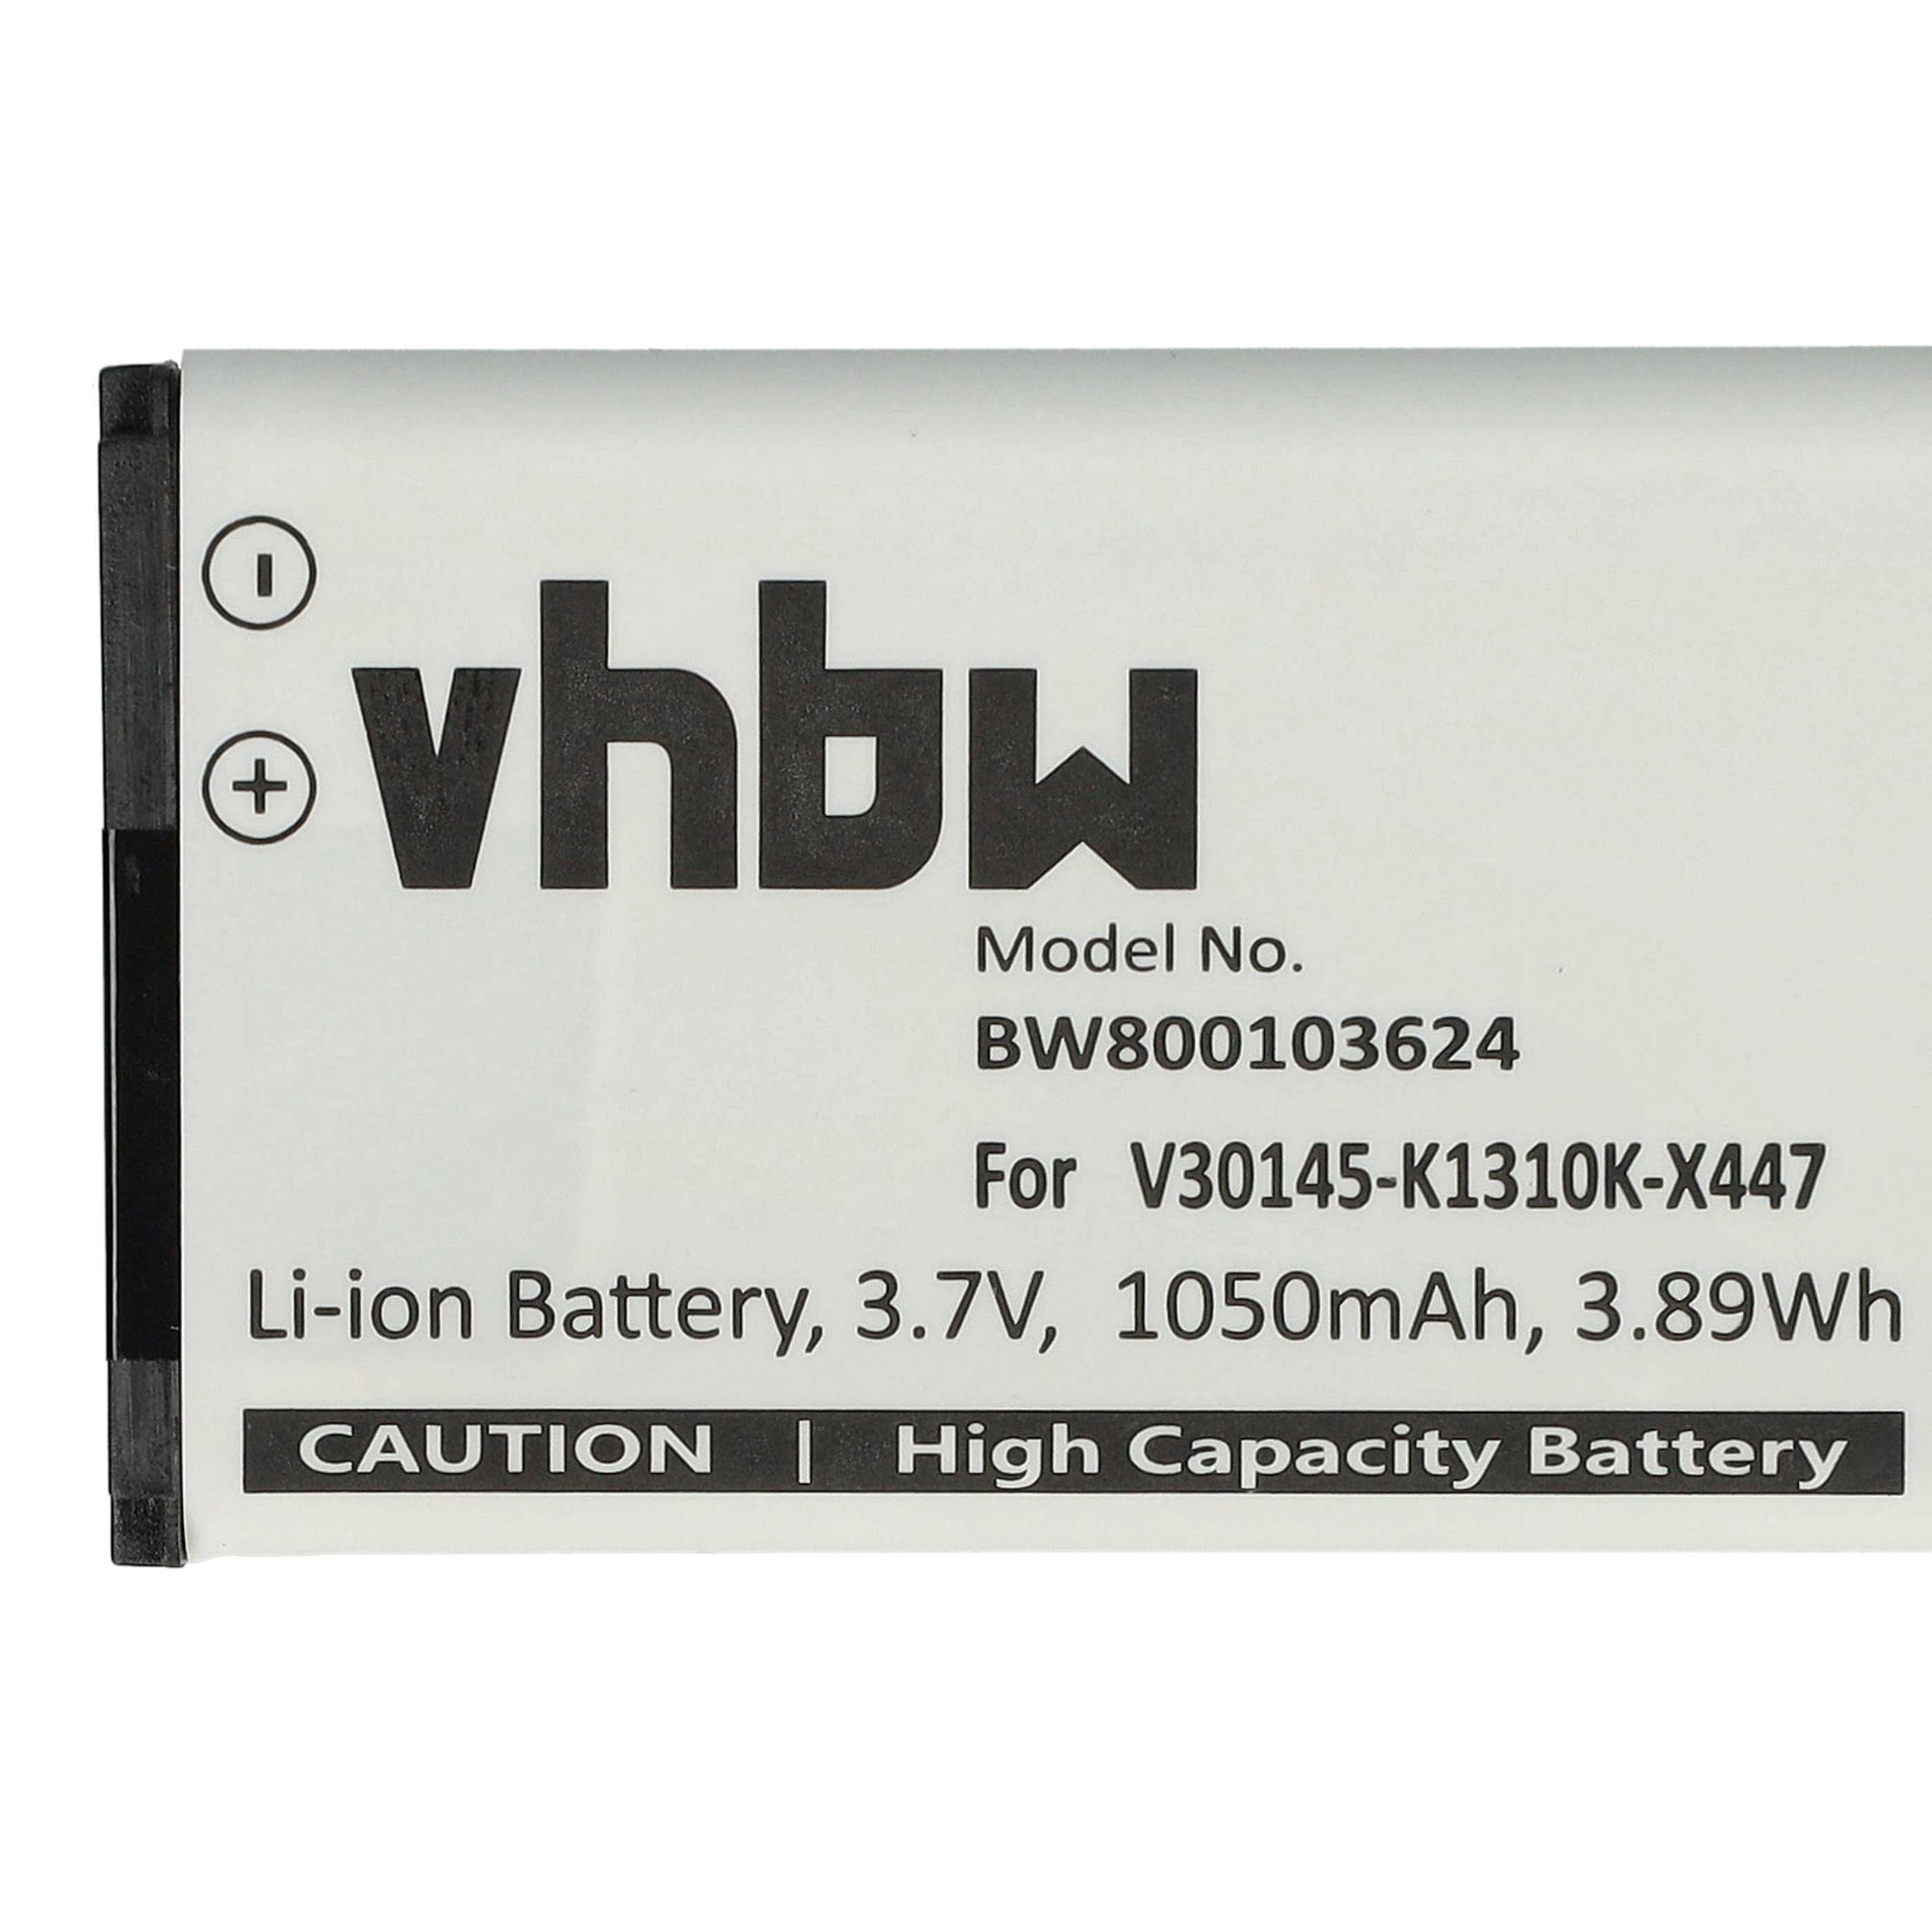 Batterie remplace Siemens V30145-K1310K-X447 pour téléphone - 1050mAh 3,7V Li-ion